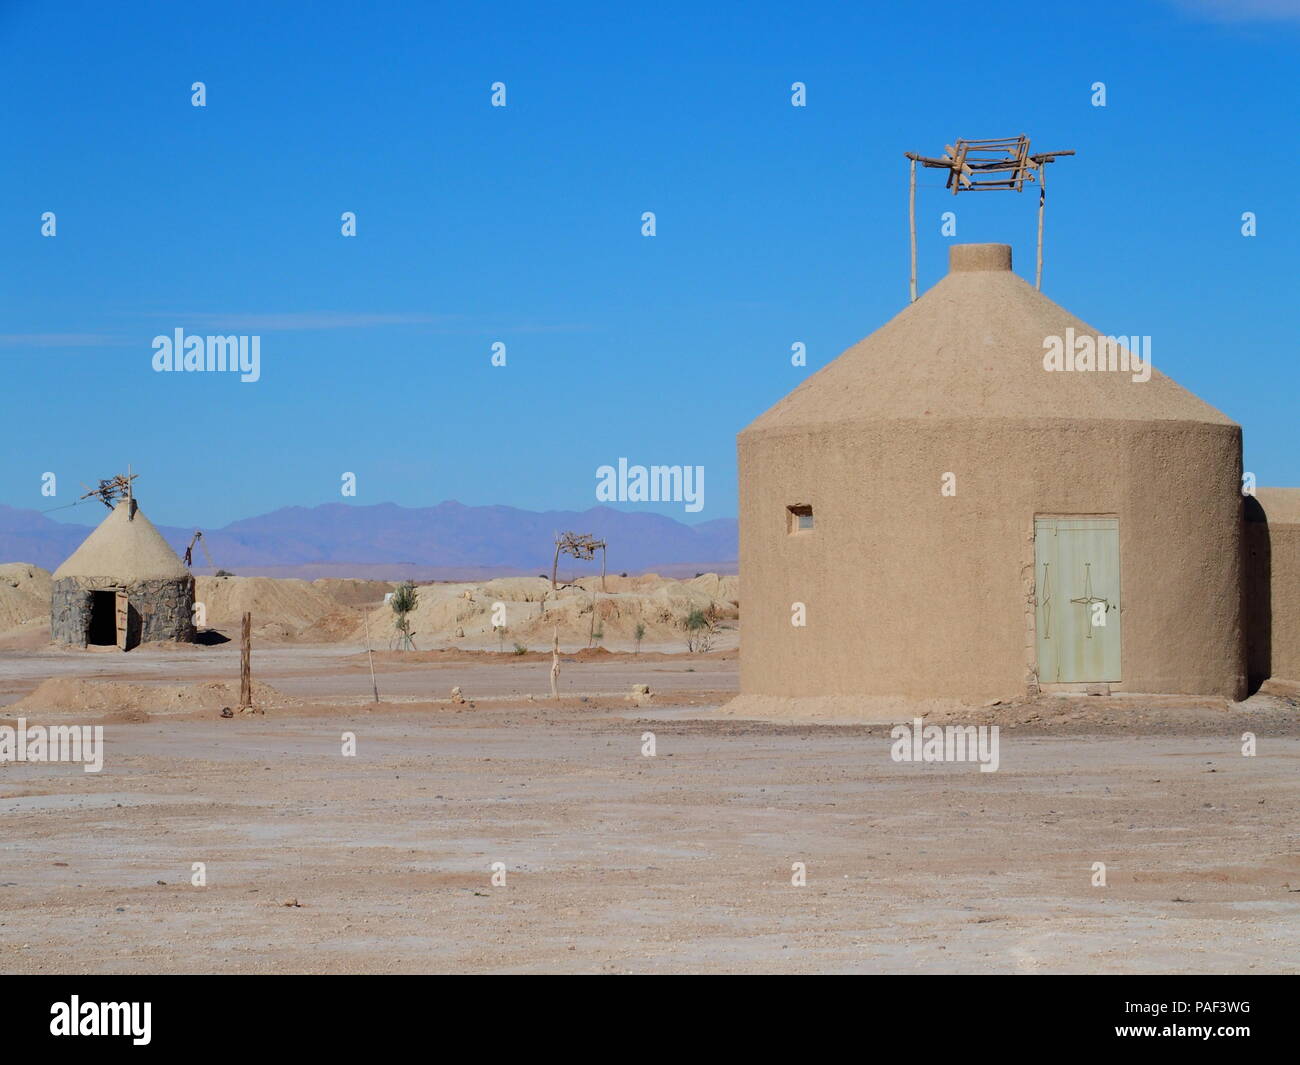 Super Wasser gut Gebäude von Ketthara an afrikanischen sandige Wüste Sahara Landschaften in der Nähe von Erfoud in Marokko mit klaren blauen Himmel im Jahr 2017 kalte Sonne Stockfoto